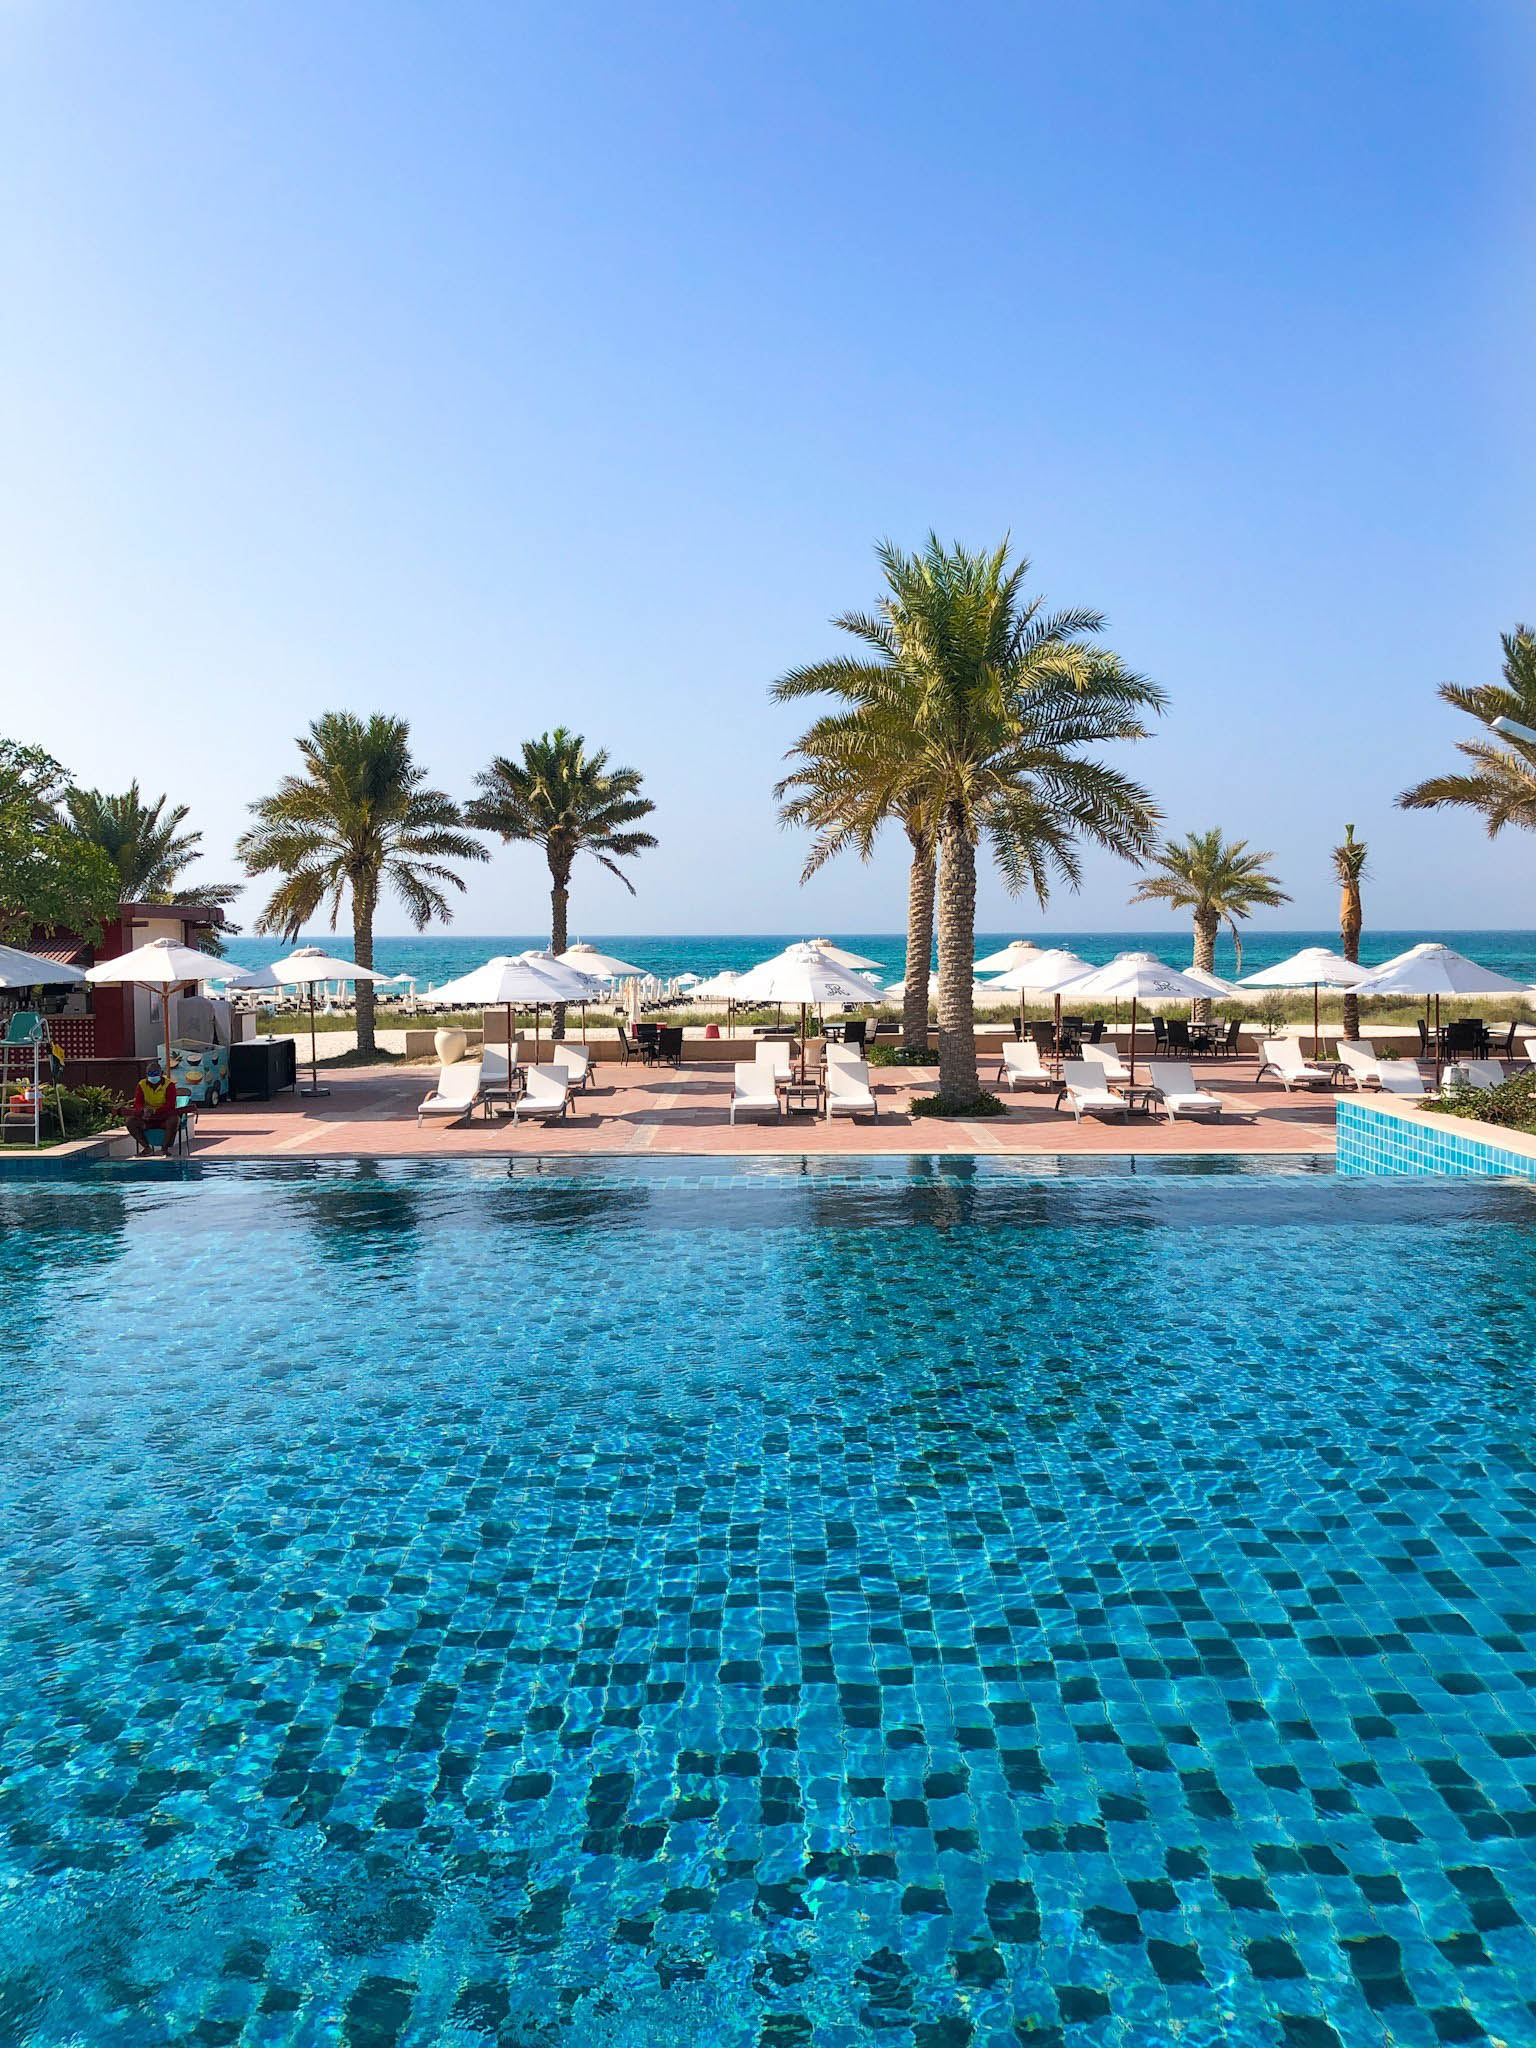 The St. Regis Saadiyat Island Resort – Abu Dhabi, UAE – Exterior Ocean View Pool